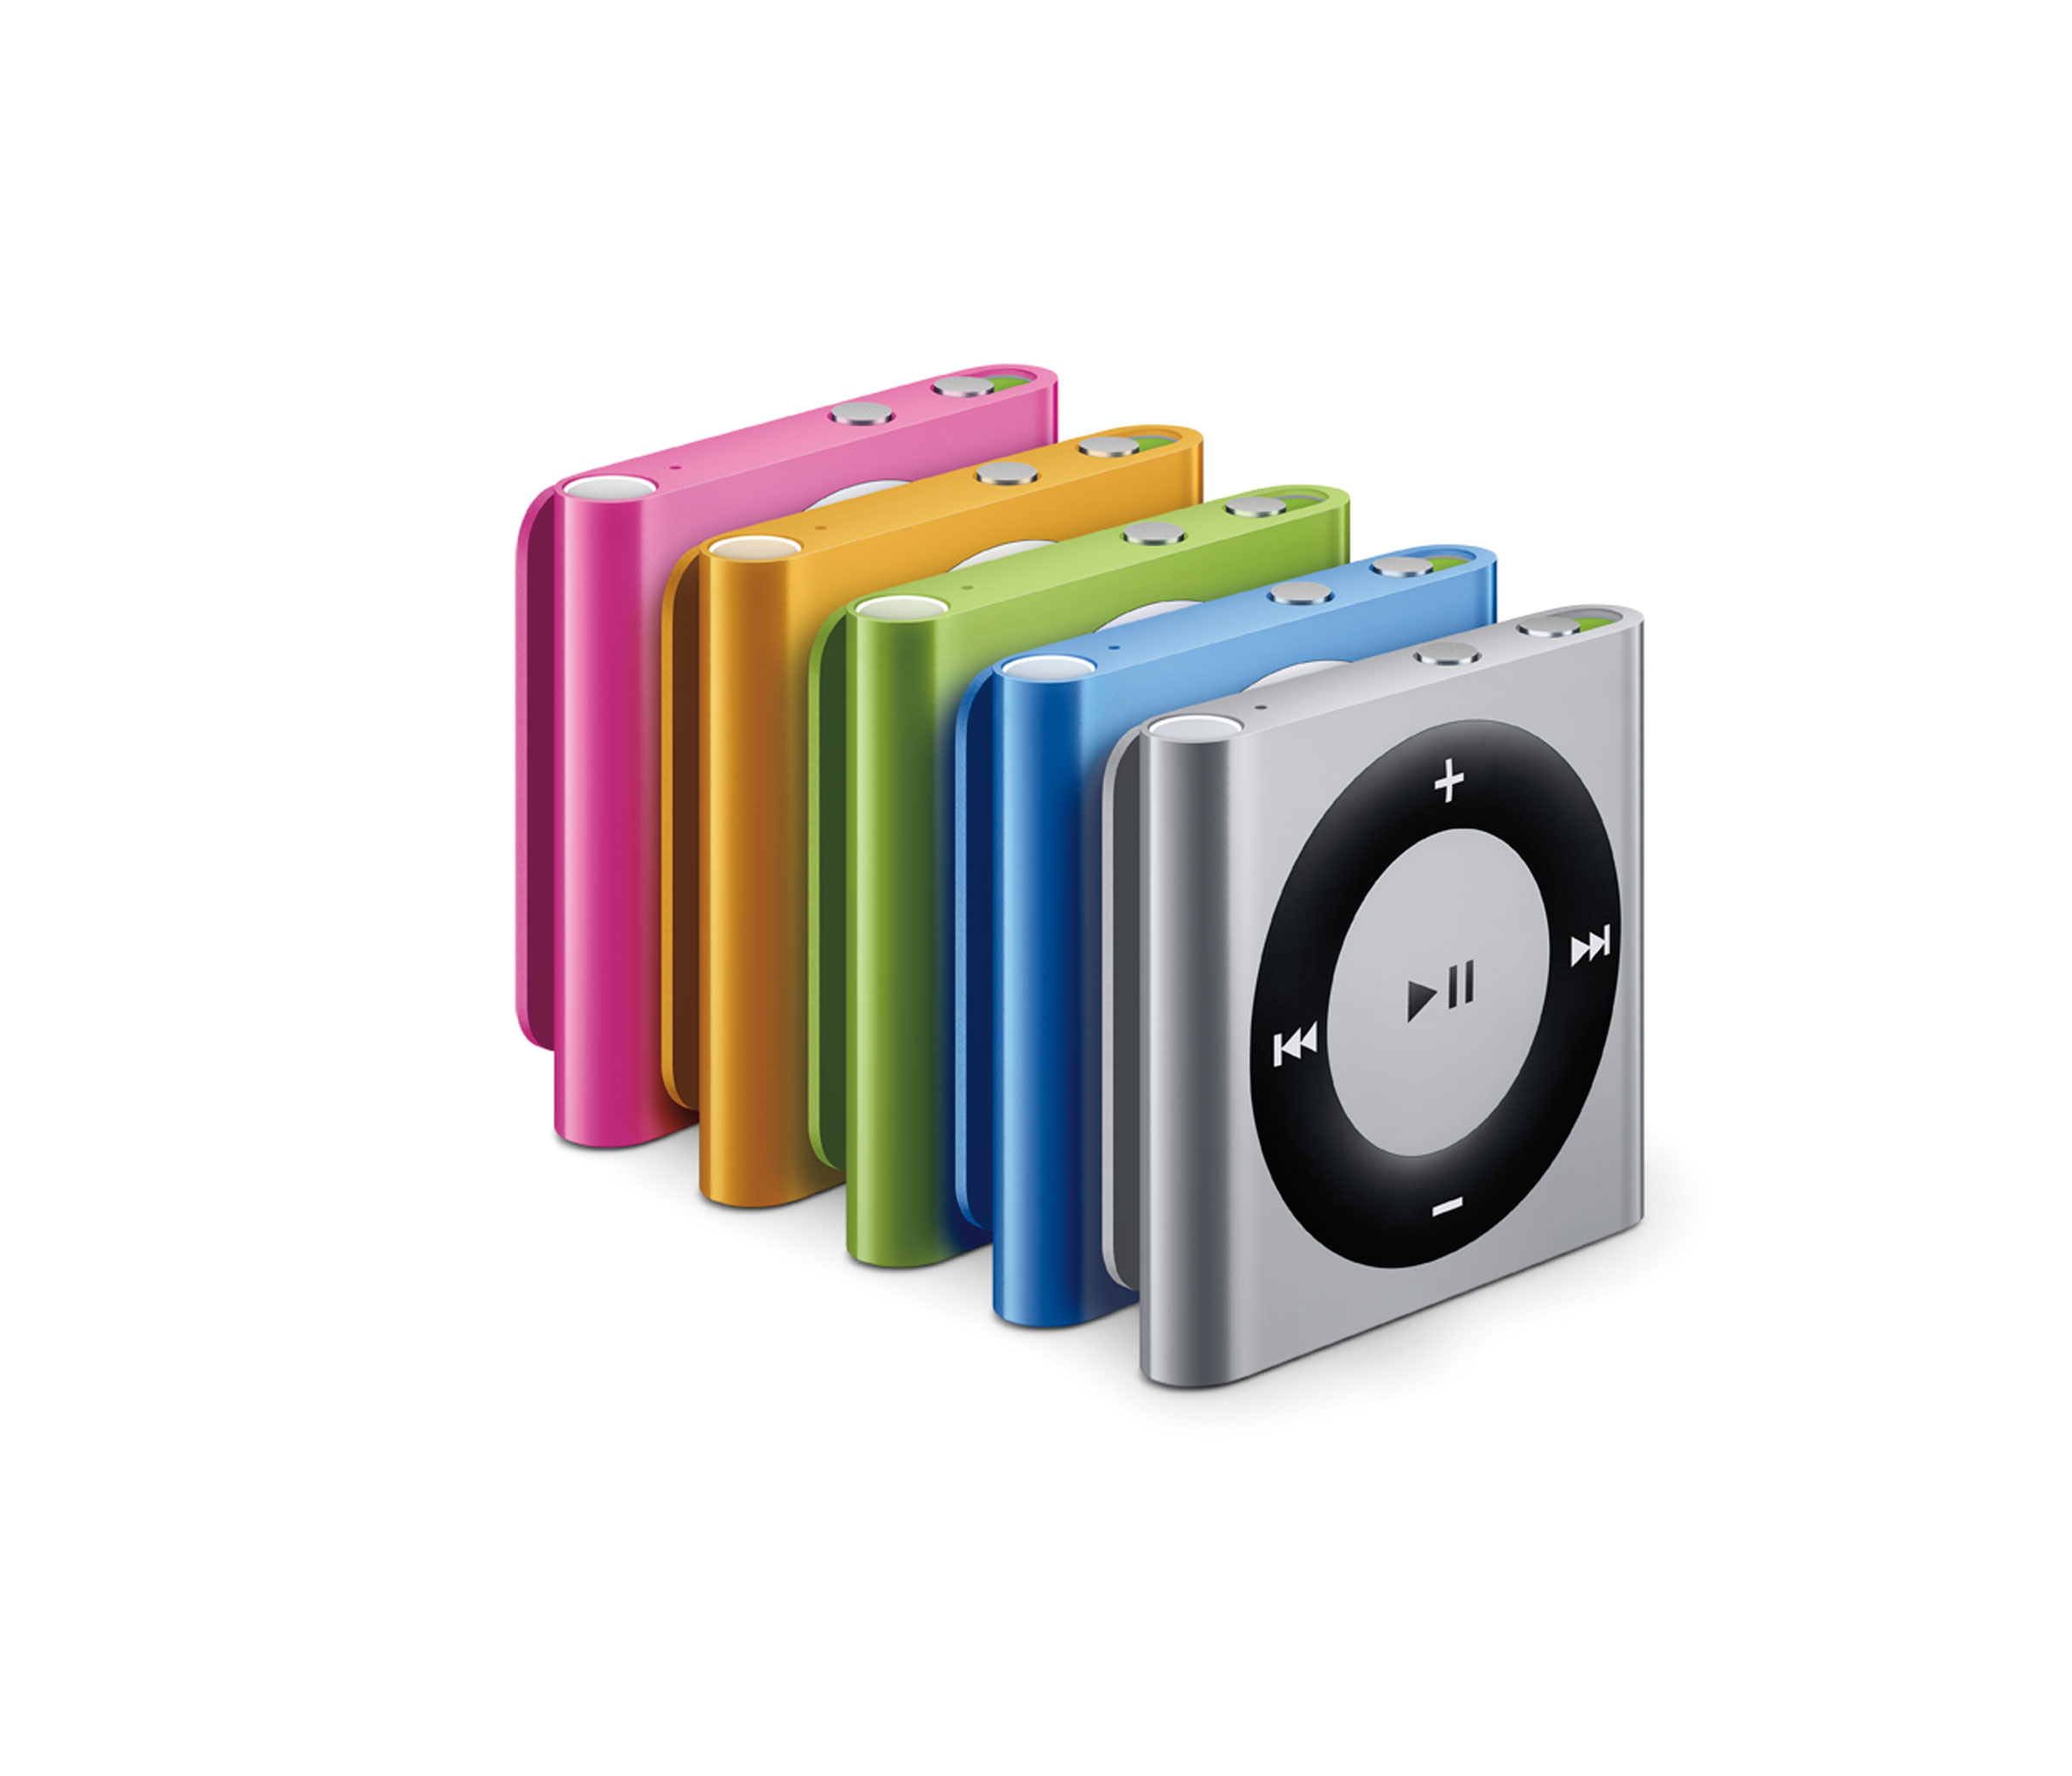 Comunicado oficial: Apple presenta el Nuevo iPod Shuffle